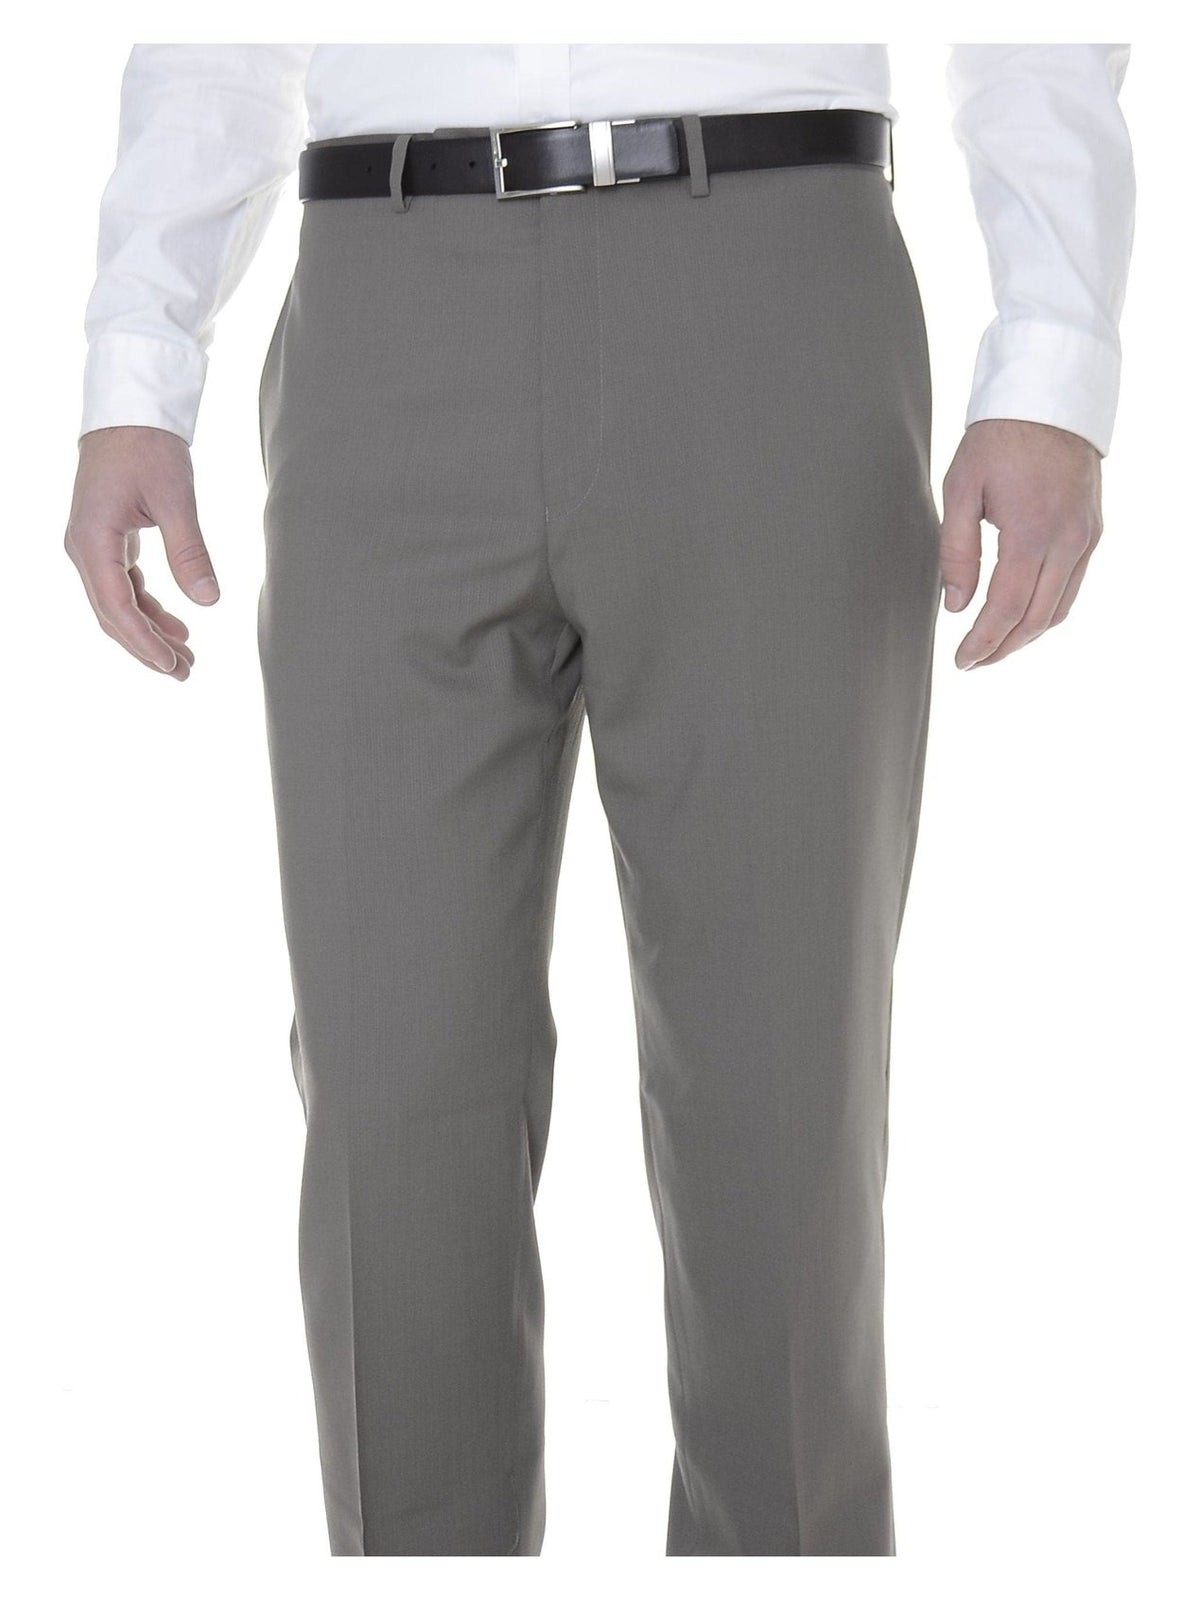 Calvin Klein Sale Pants 36X29 Calvin Klein Mens Slim Fit Taupe Herringbone Flat Front Wool Dress Pants